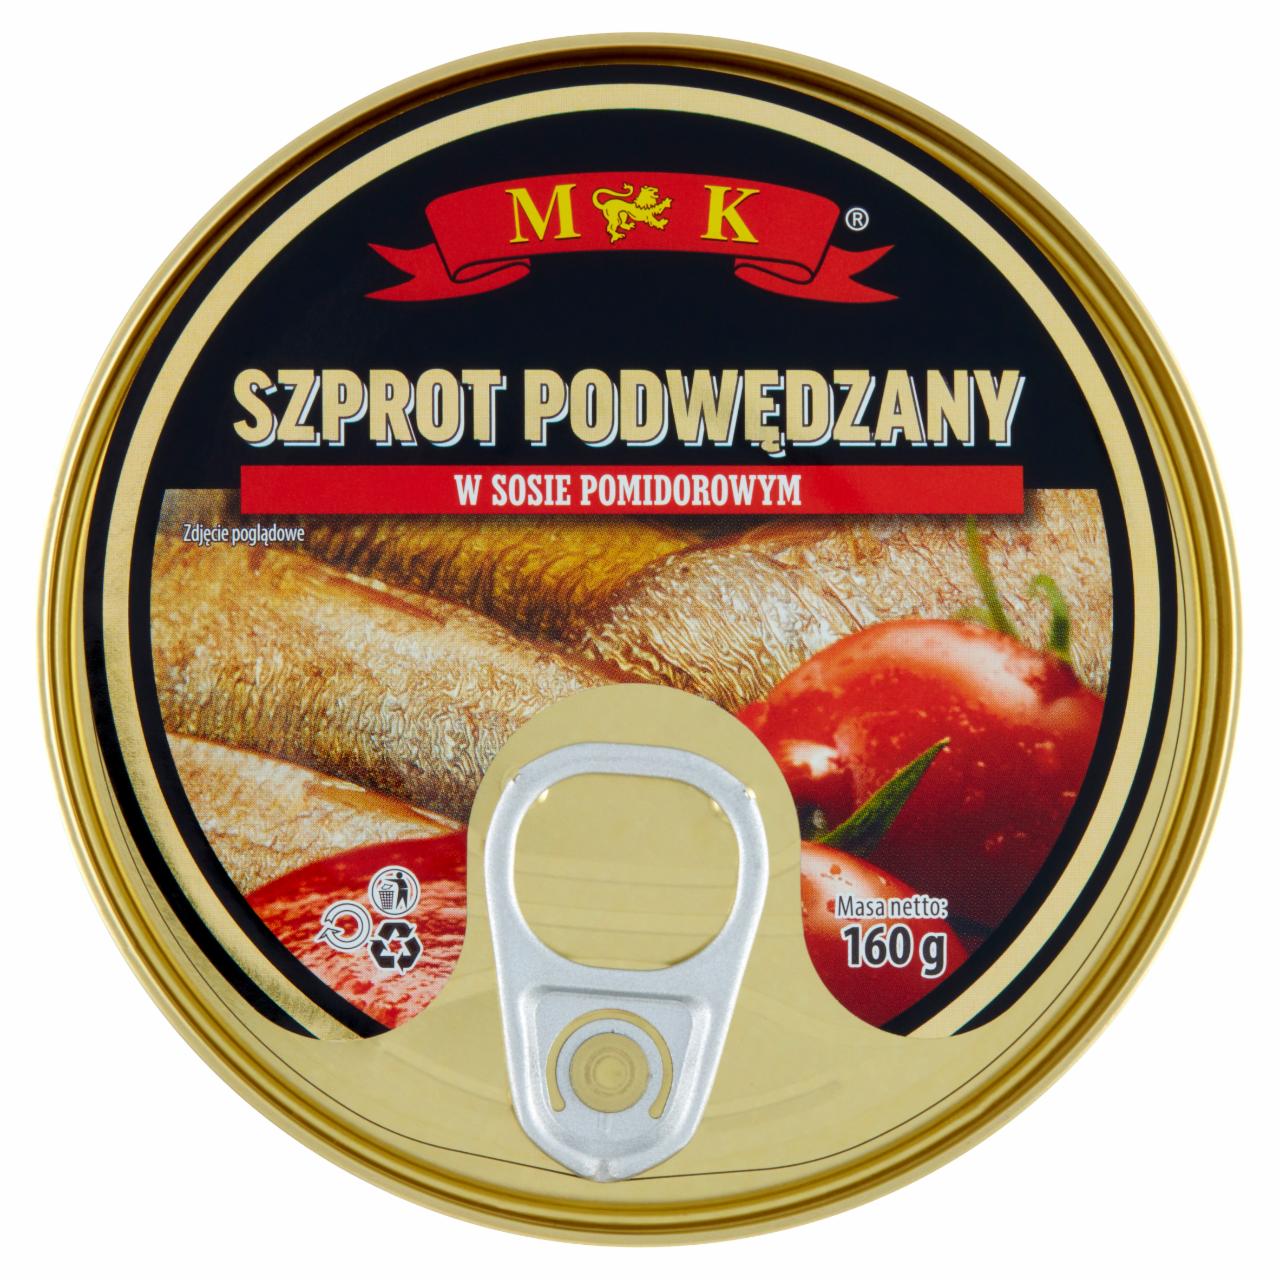 Zdjęcia - MK Szprot podwędzany w sosie pomidorowym 160 g